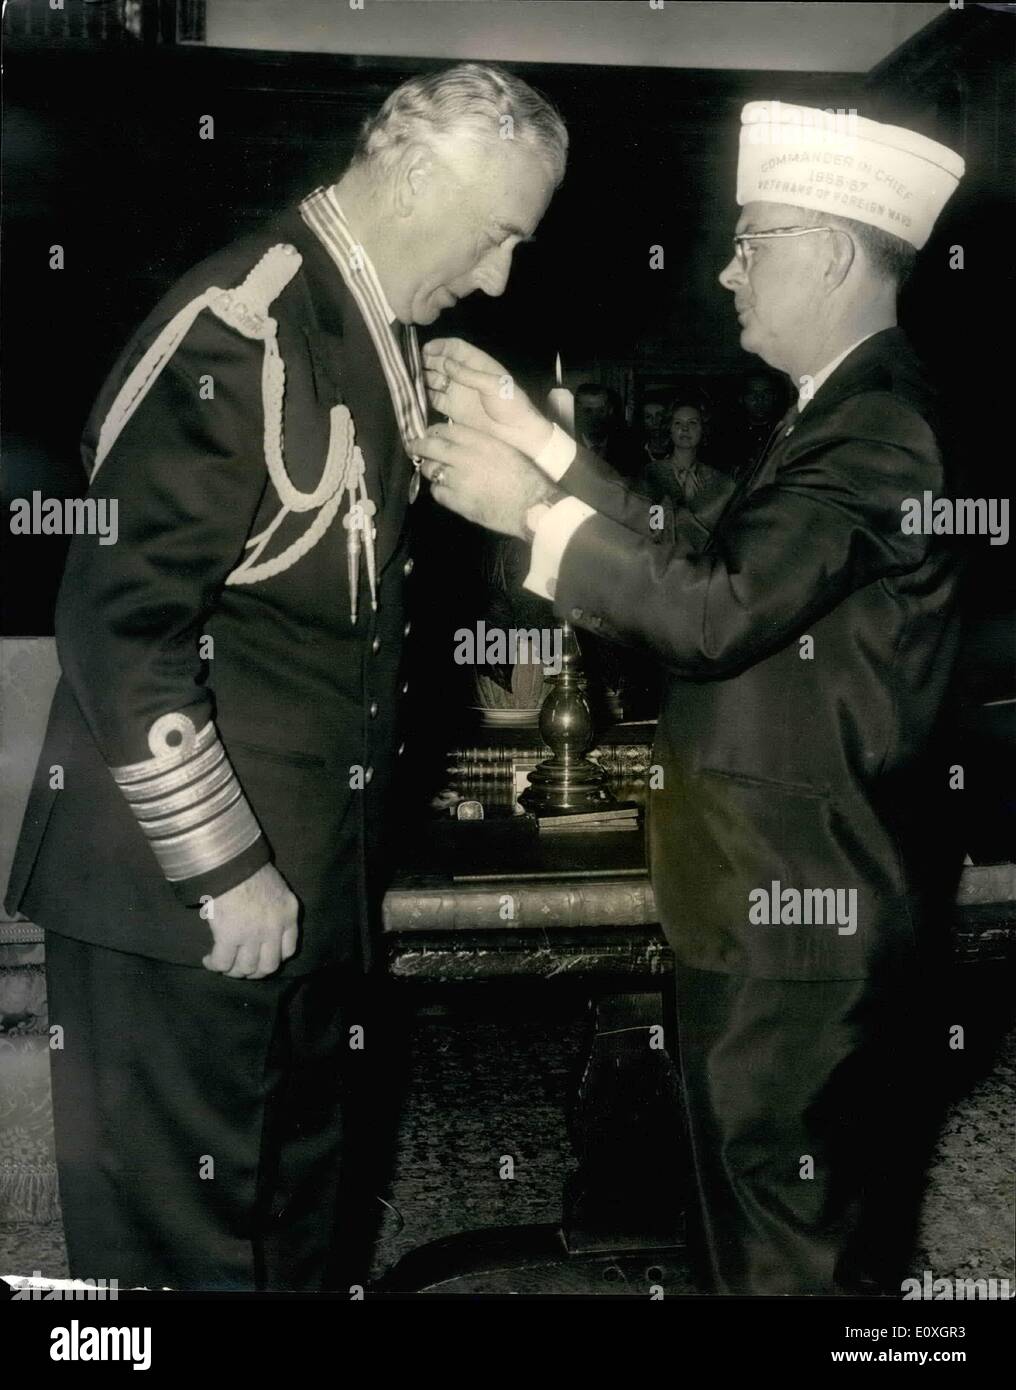 Ottobre 10, 1966 - Earl Mountbatten e Douglas Fairbanes Jnr. Sono presentati con V.F.H. C-A-C la medaglia d oro al merito: presentazione del Comandante in capo la Medaglia d'oro al merito e della citazione (veterani delle guerre straniere degli Stati Uniti) per l'ammiraglio della flotta, Earl Mountbatten di Birmania, K.G. e al capitano Douglas Fairbanks Jr navale degli Stati Uniti (Riserva pensionati) da parte del comandante in capo del VFW, Leslie M. Fry, ha avuto luogo oggi a Sutton Place, Surrey, la casa del signor, Paul Getty Foto Stock